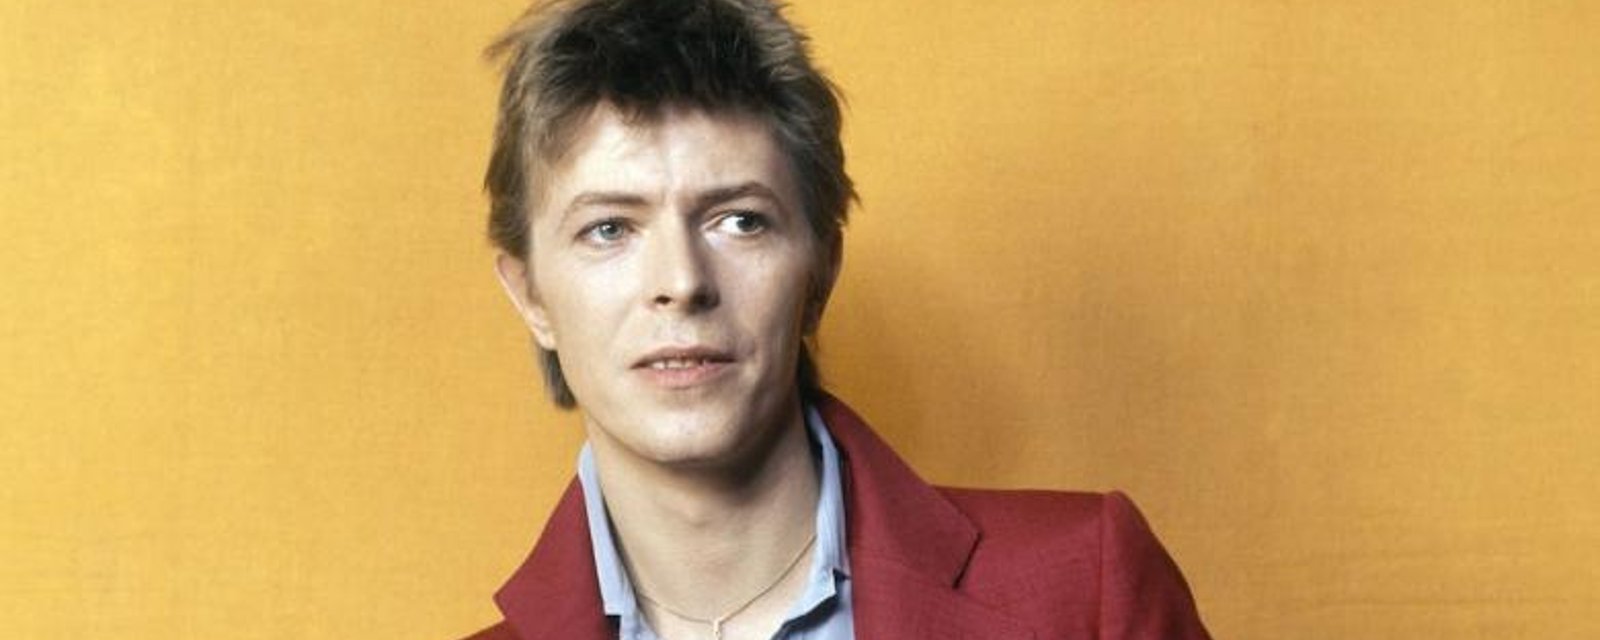 Les cendres de David Bowie seront dispersées dans un endroit bien spécial...